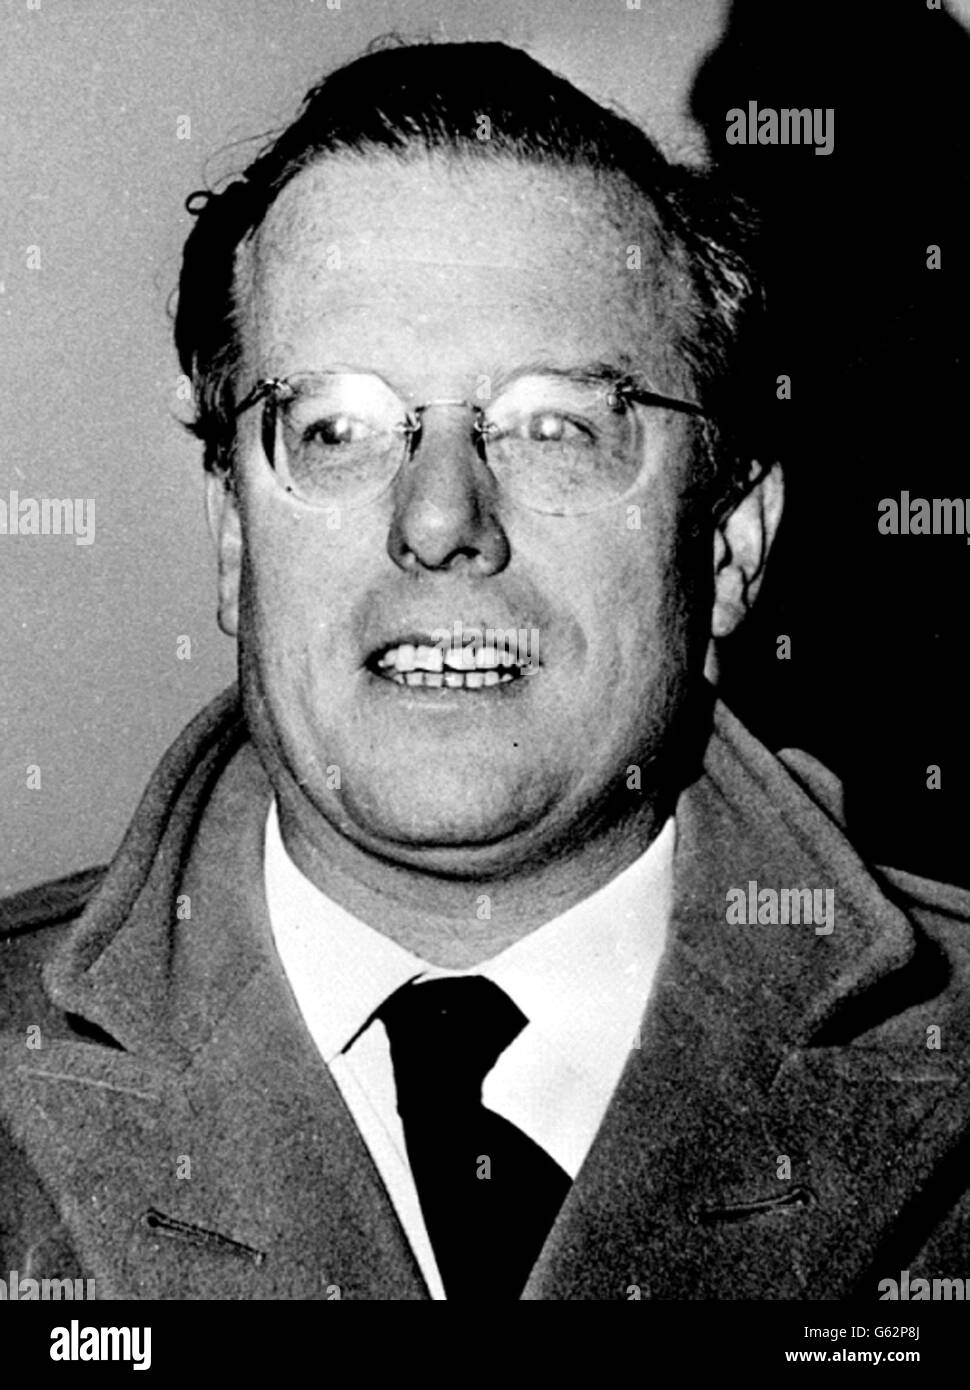 Walter Terry, Journalist bei The Daily Mail, wird in London abgebildet, als er an der öffentlichen Sitzung des Vassall-Tribunals zur Untersuchung des Vassall-Spionagefalls und dessen Fortsetzung teilnahm. Stockfoto